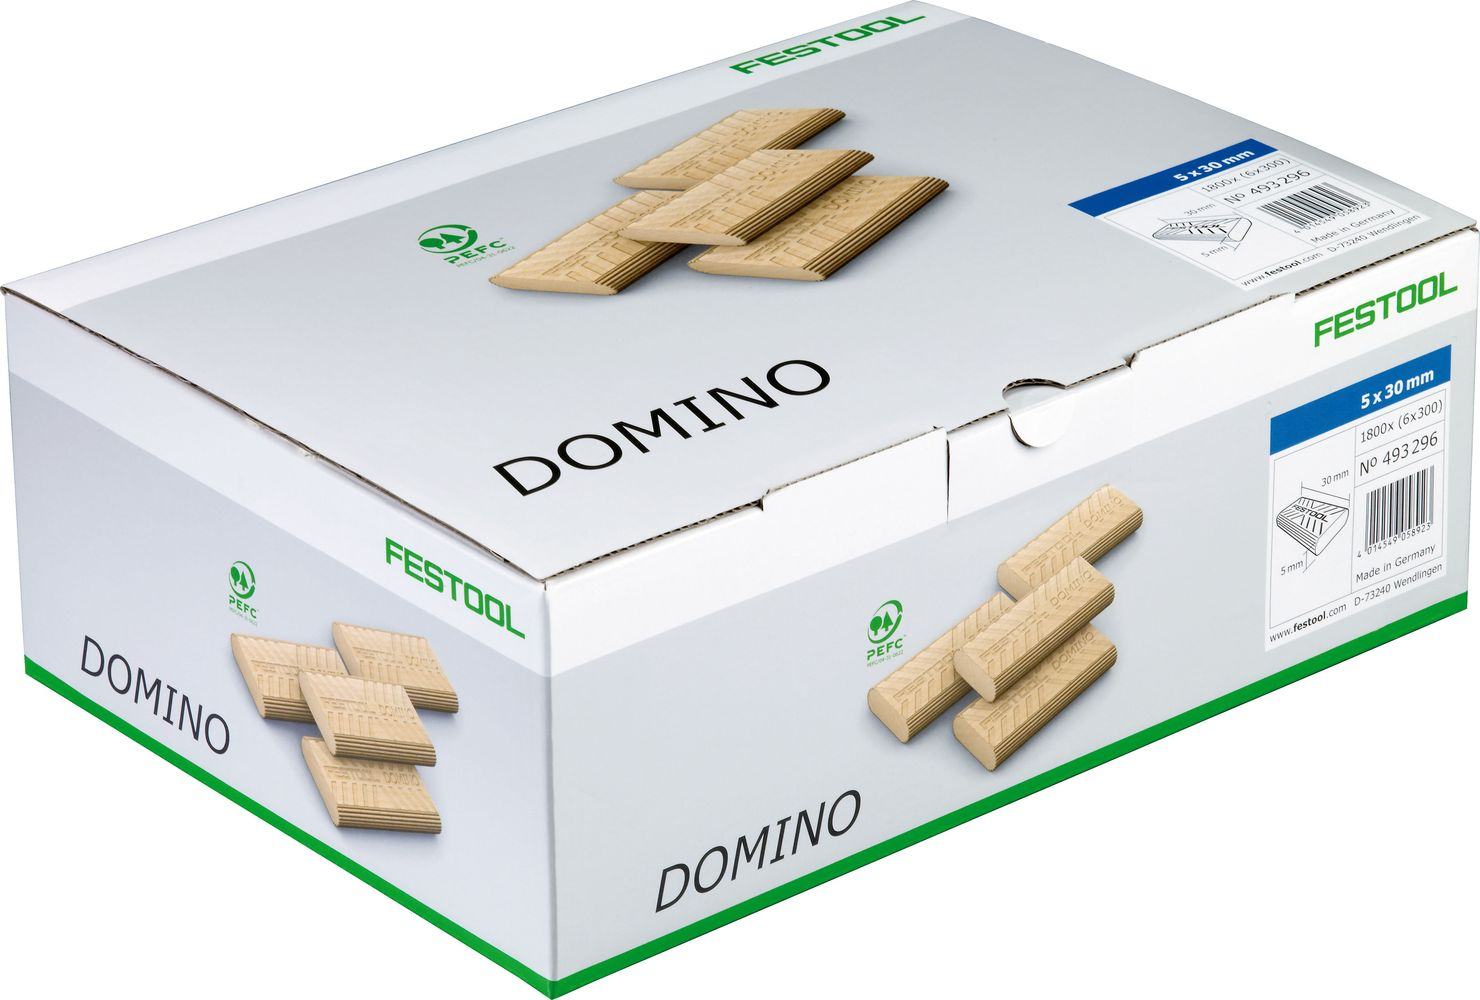 domino-en-hetre-10x50-510-bte-493300-festool-1